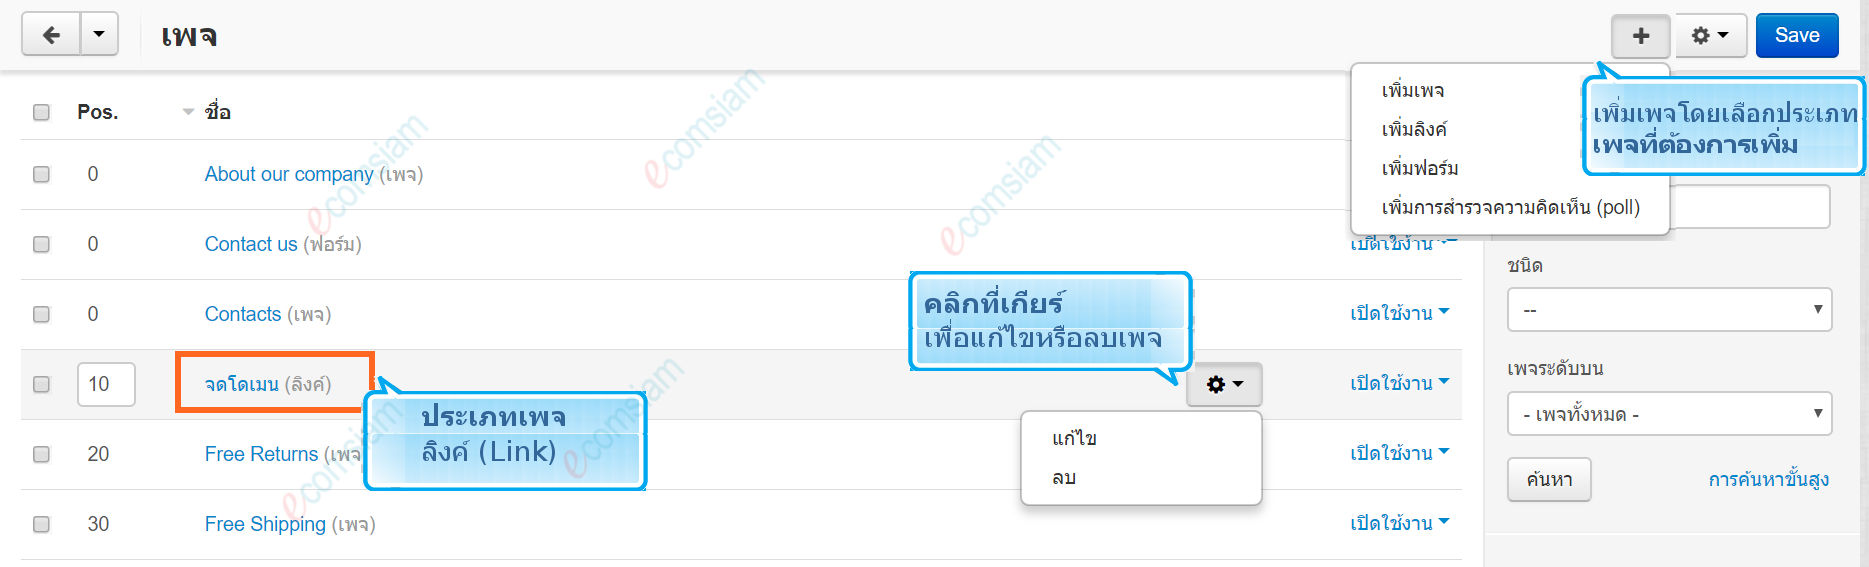 เว็บไซต์สำเร็จรูปไทย - คู่มือร้านออนไลน์ - การจัดการร้านออนไลน์ -เว็บเพจ pages สร้างลิงค์เพจ link pages